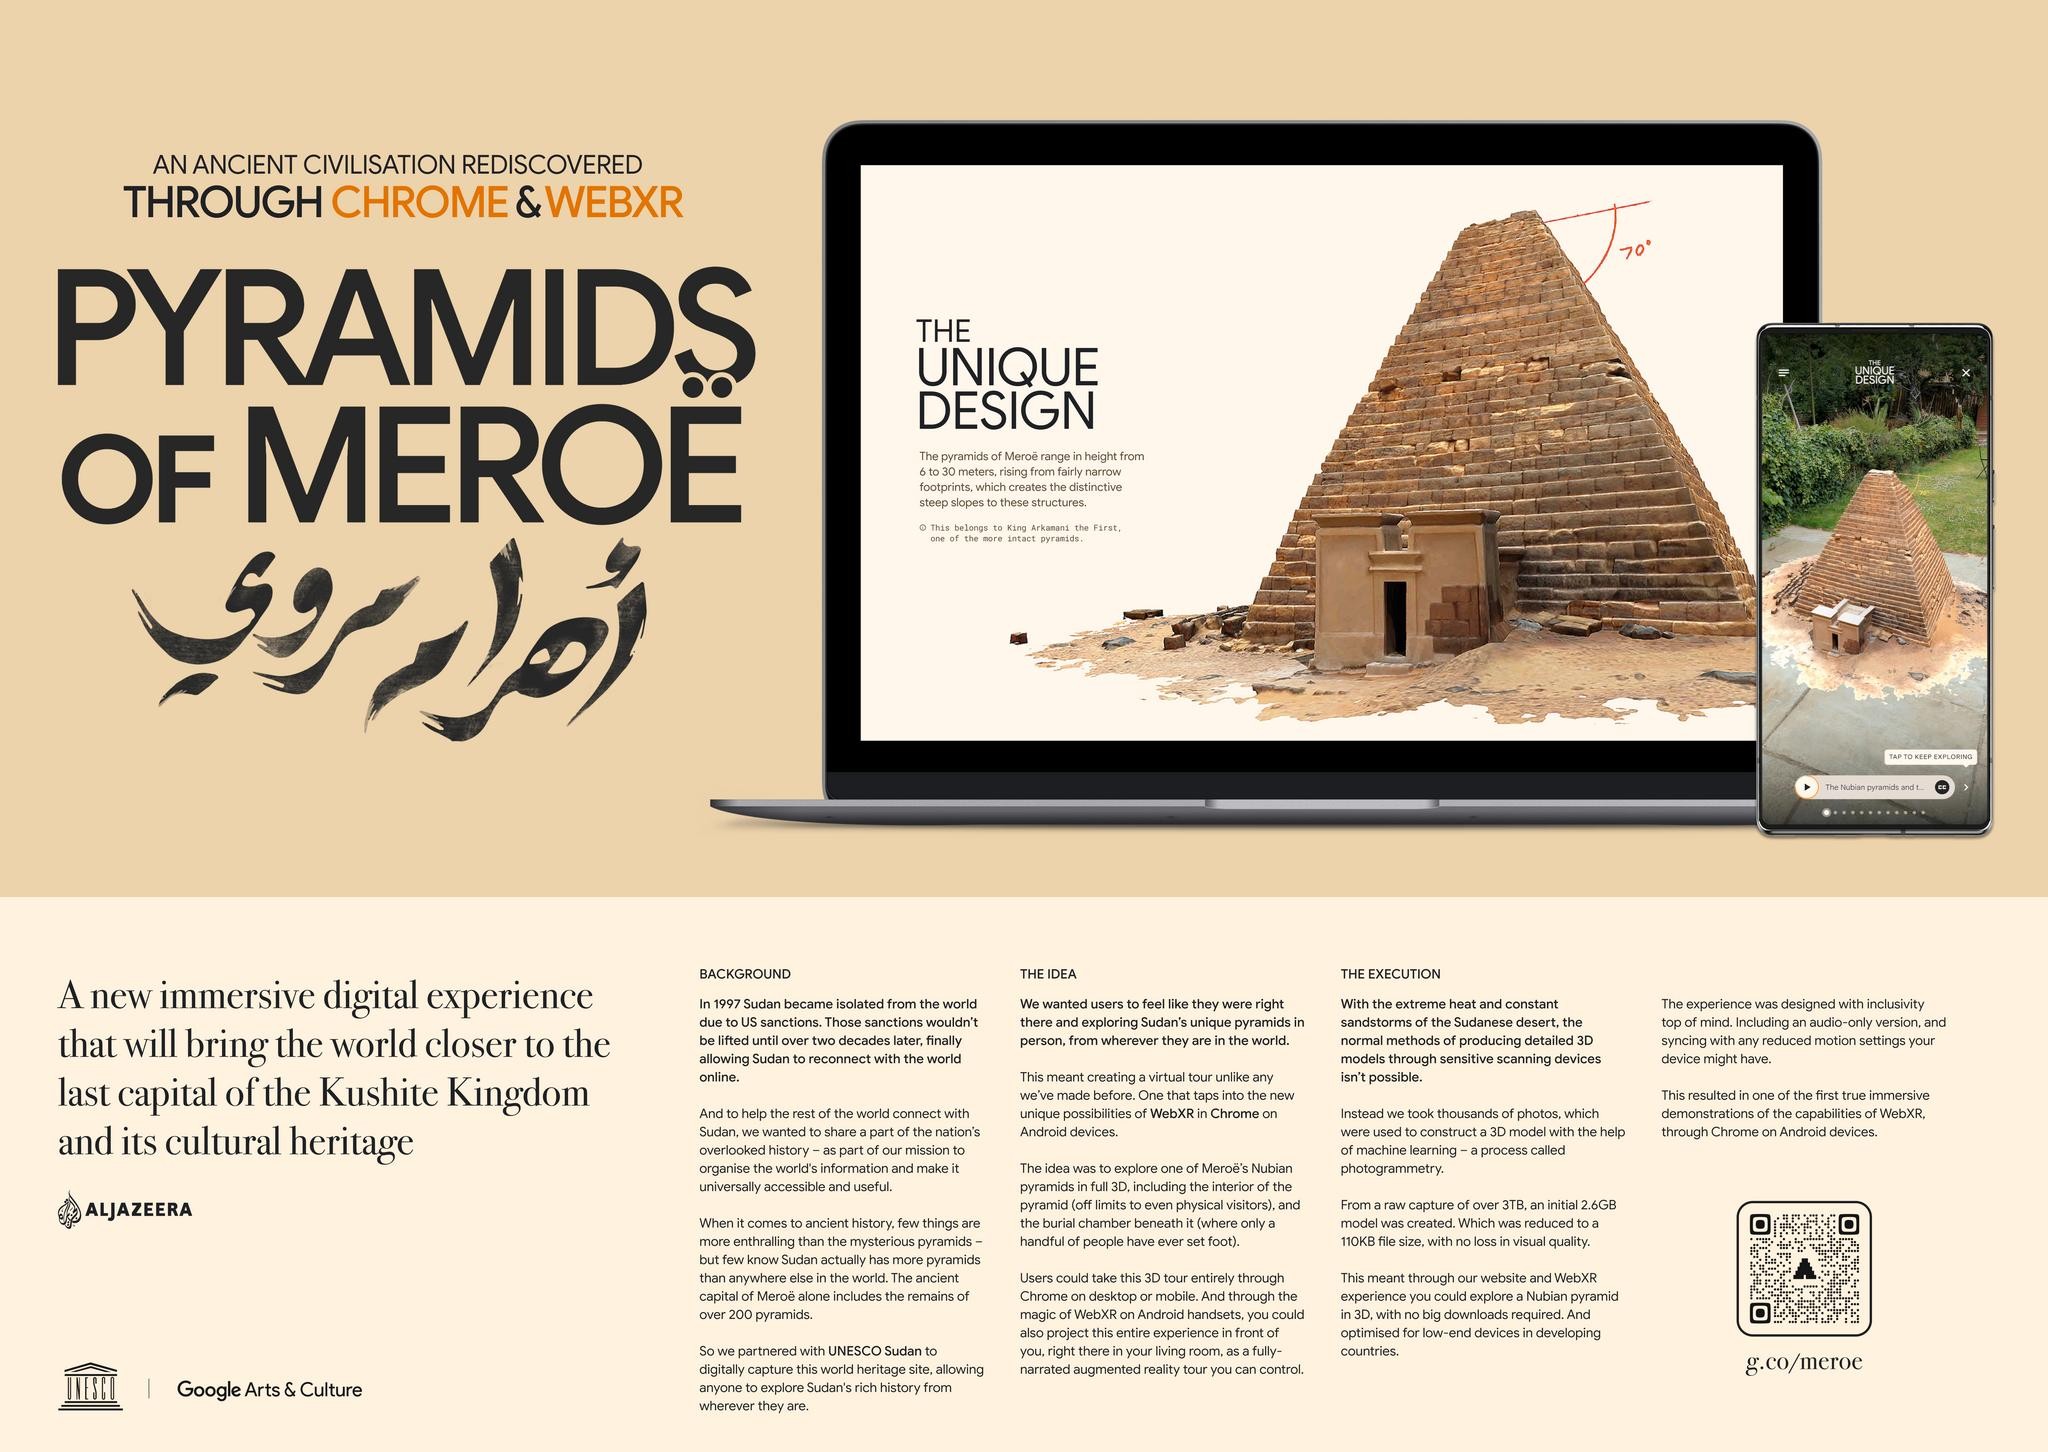 The Pyramids of Meroë